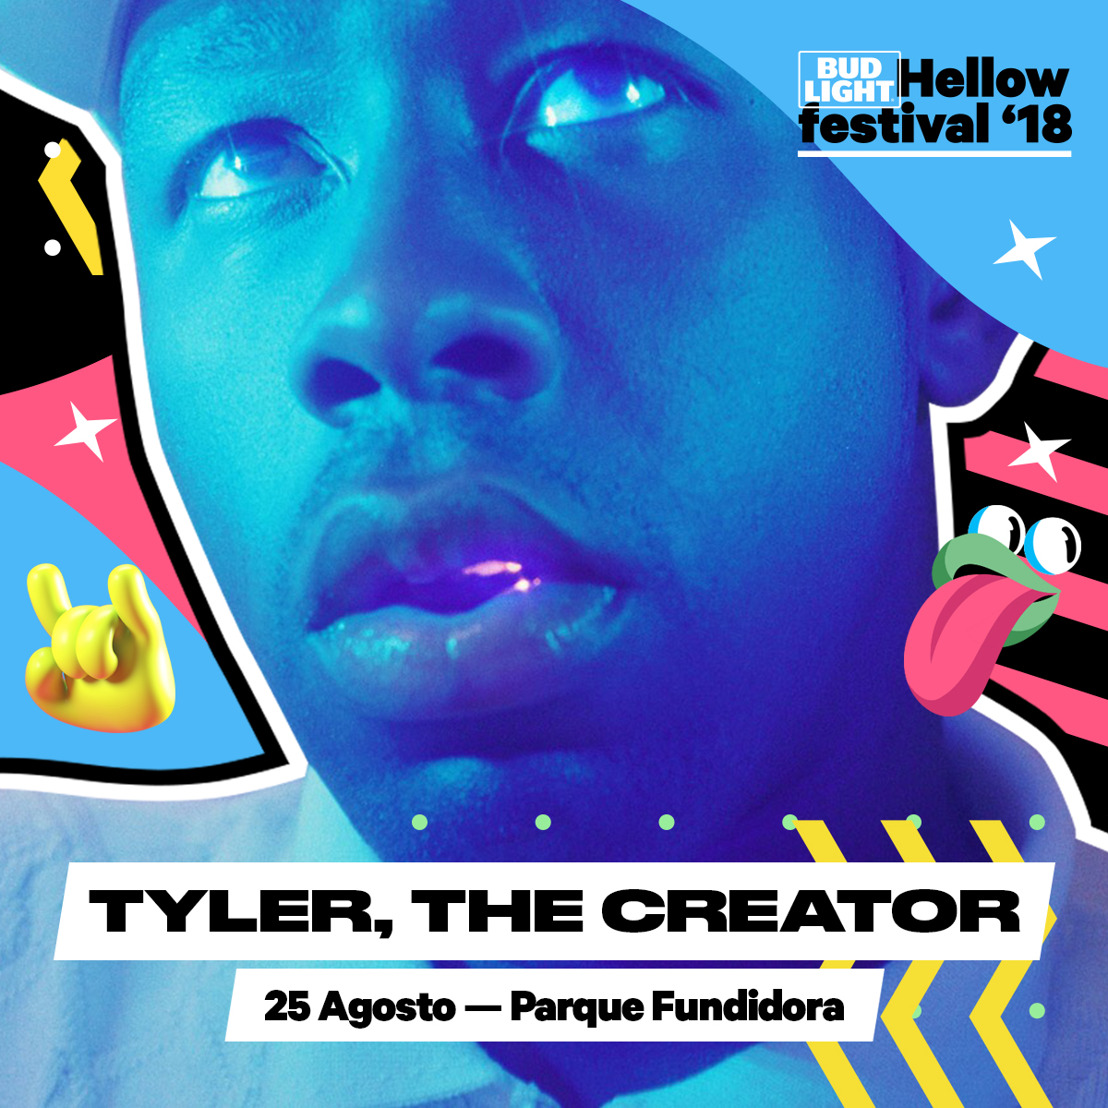 Tyler, The Creator, uno de los raperos más famosos del presente, tocará en el Bud Light Hellow Festival 2018